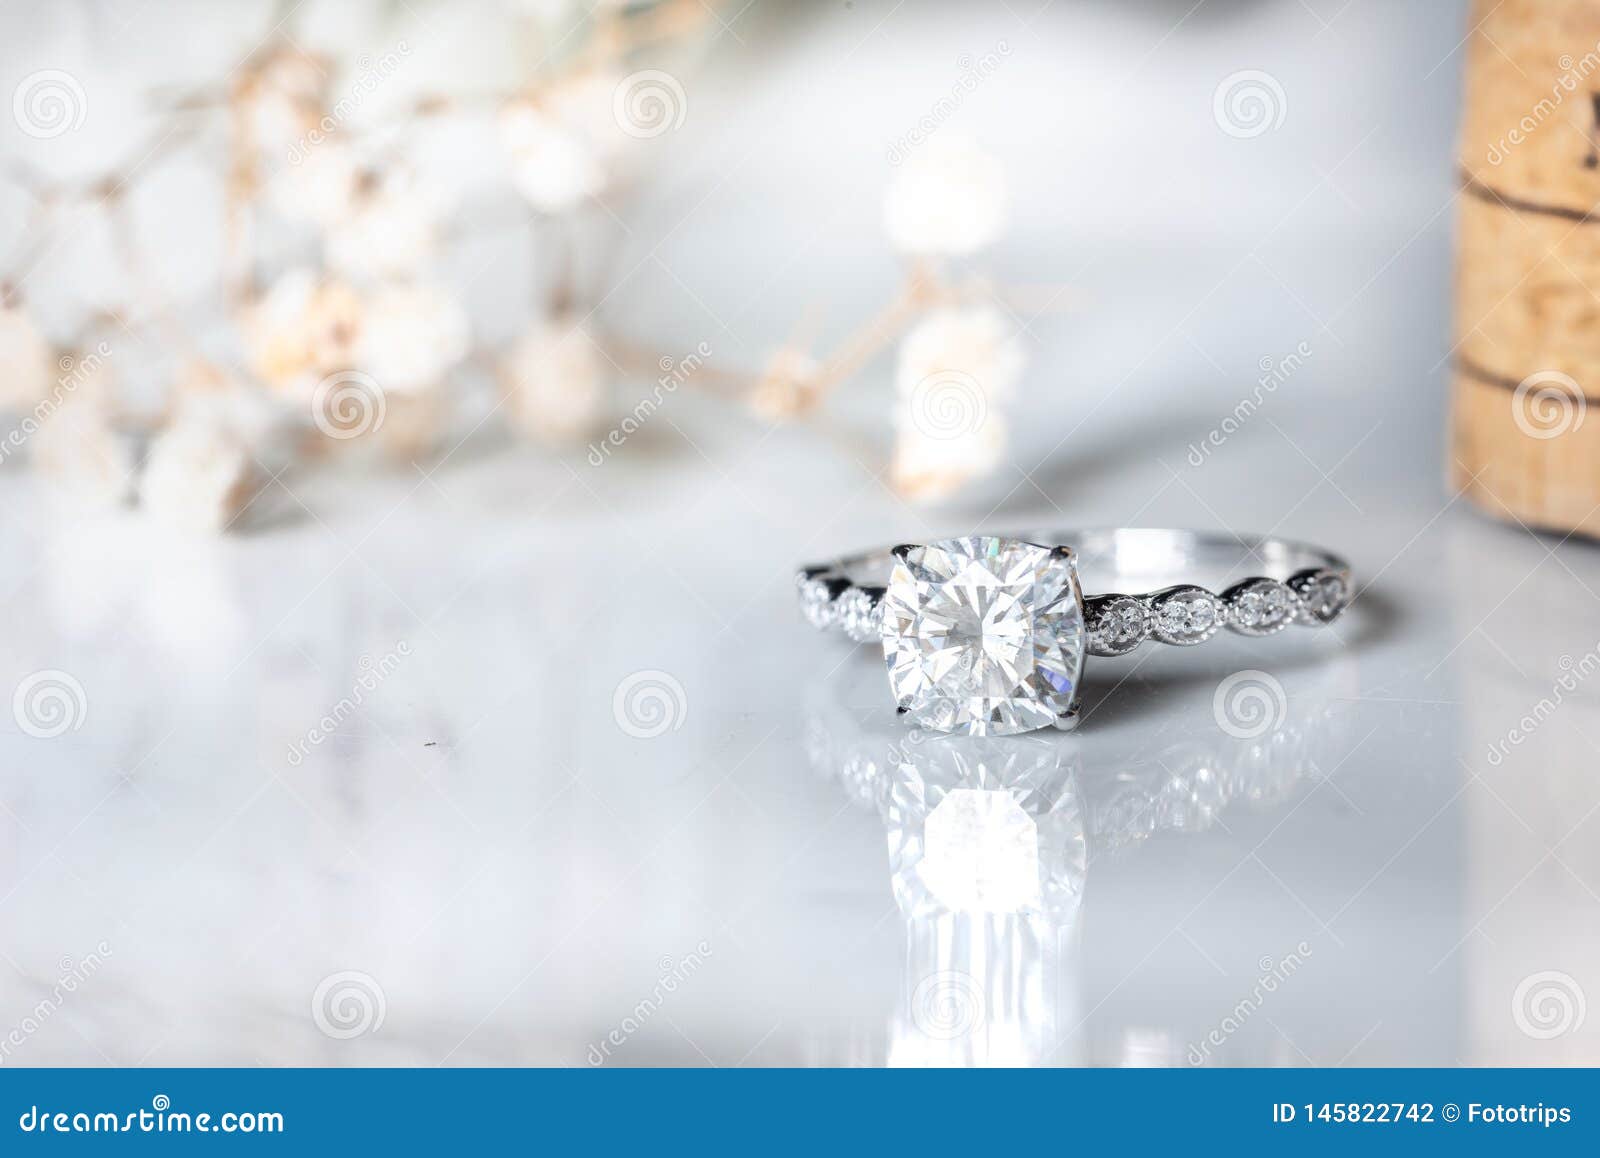 Nhẫn kim cương: Chào mừng bạn đến với khoảnh khắc kỷ niệm đặc biệt của cuộc đời bạn với loạt hình ảnh những chiếc nhẫn kim cương lộng lẫy và sang trọng! Đóng lại hợp đồng tình yêu của bạn trọn vẹn với những kiệt tác thời trang đáng ngưỡng mộ này!